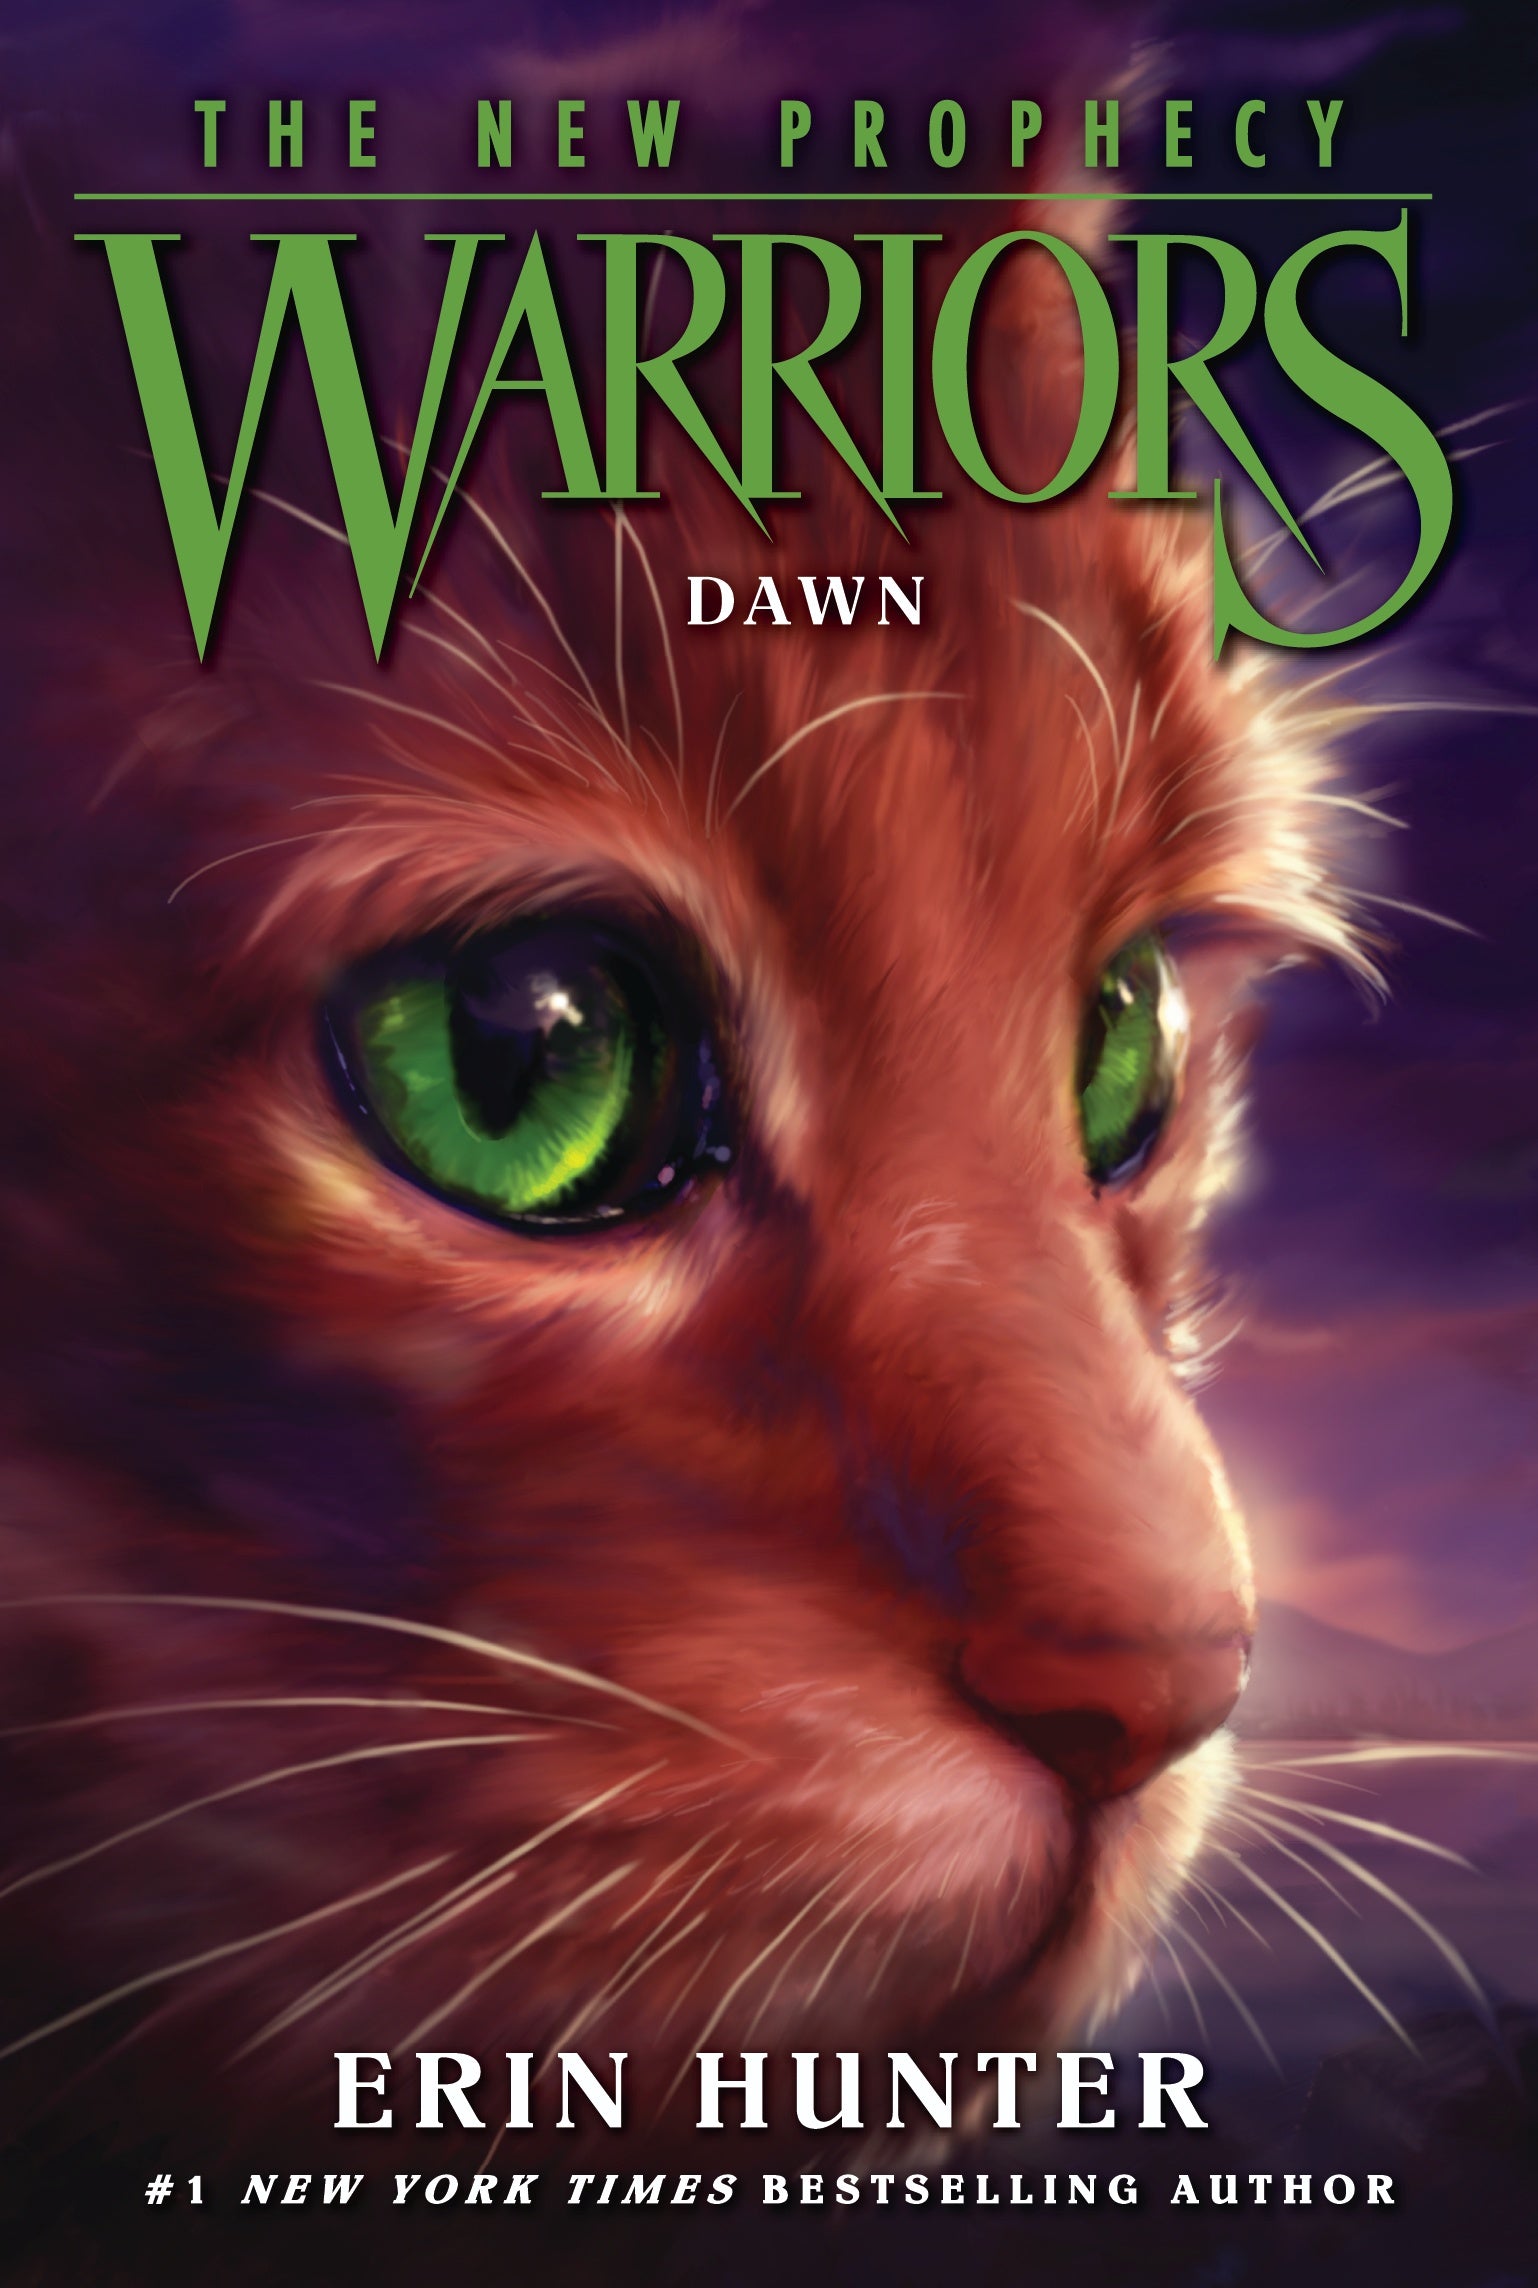 Warrior cats, Warrior cat, Warrior cats books